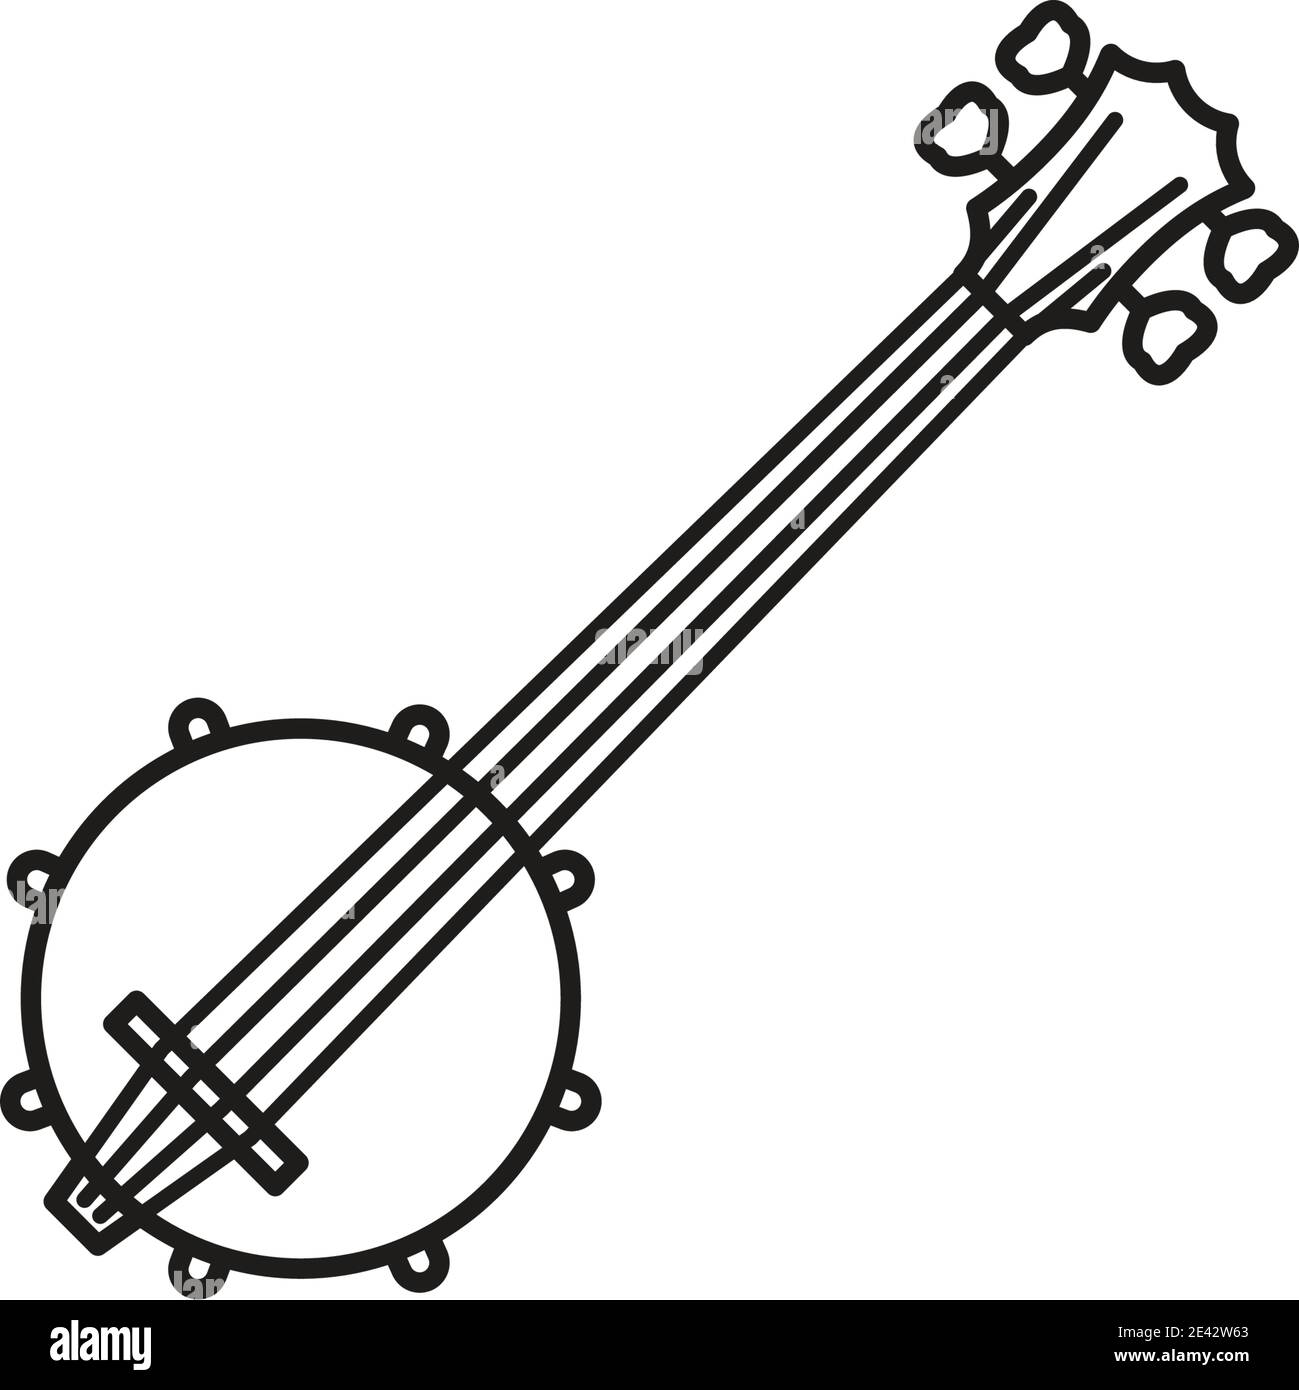 Icône de ligne vectorielle banjo à quatre chaînes pour la Journée de la musique country Le 17 septembre Illustration de Vecteur